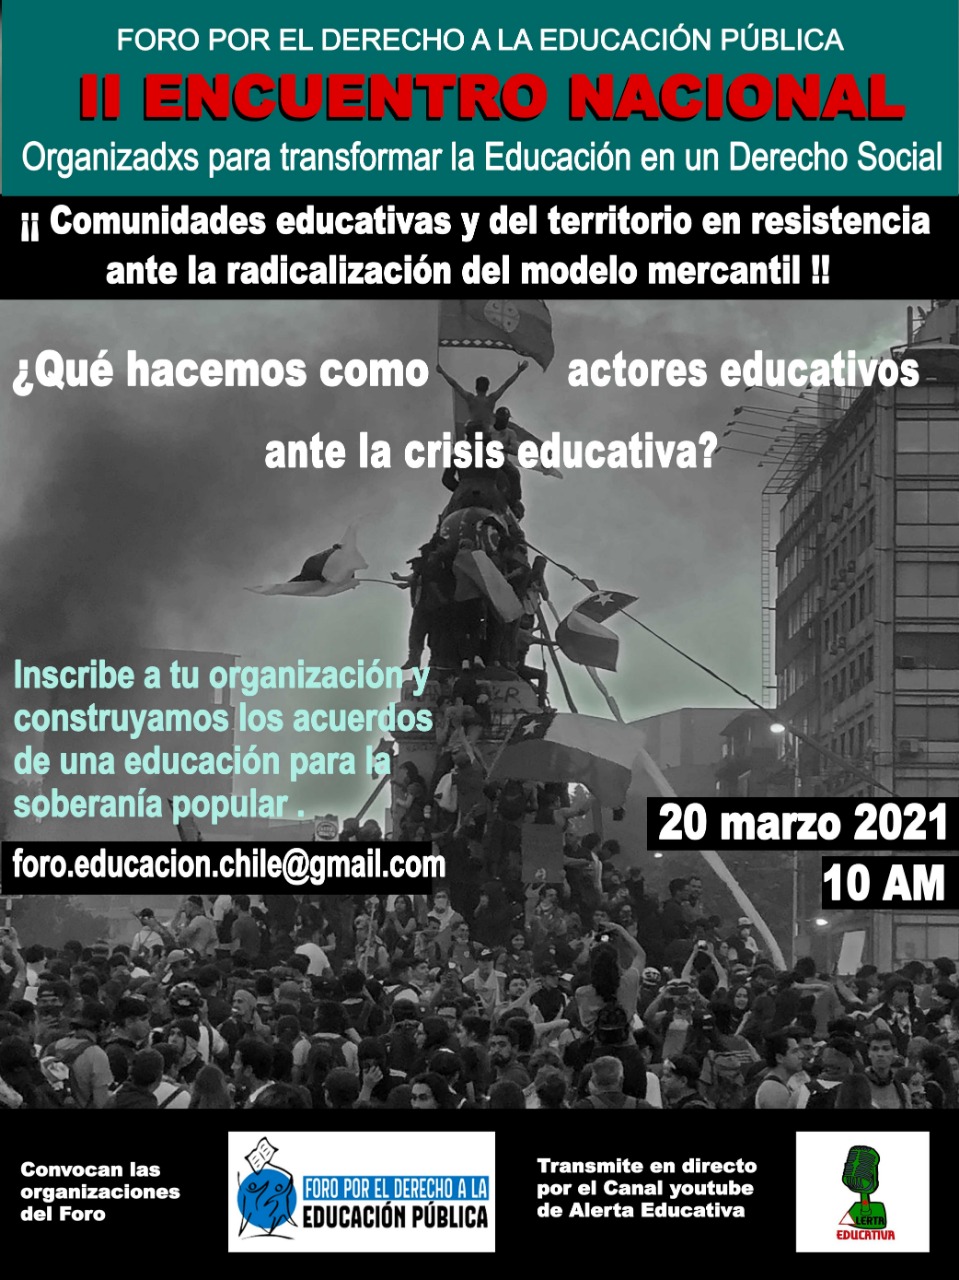 II Encuentro Nacional “Organizándonos para transformar la educación como un derecho social” 20 marzo, 2021